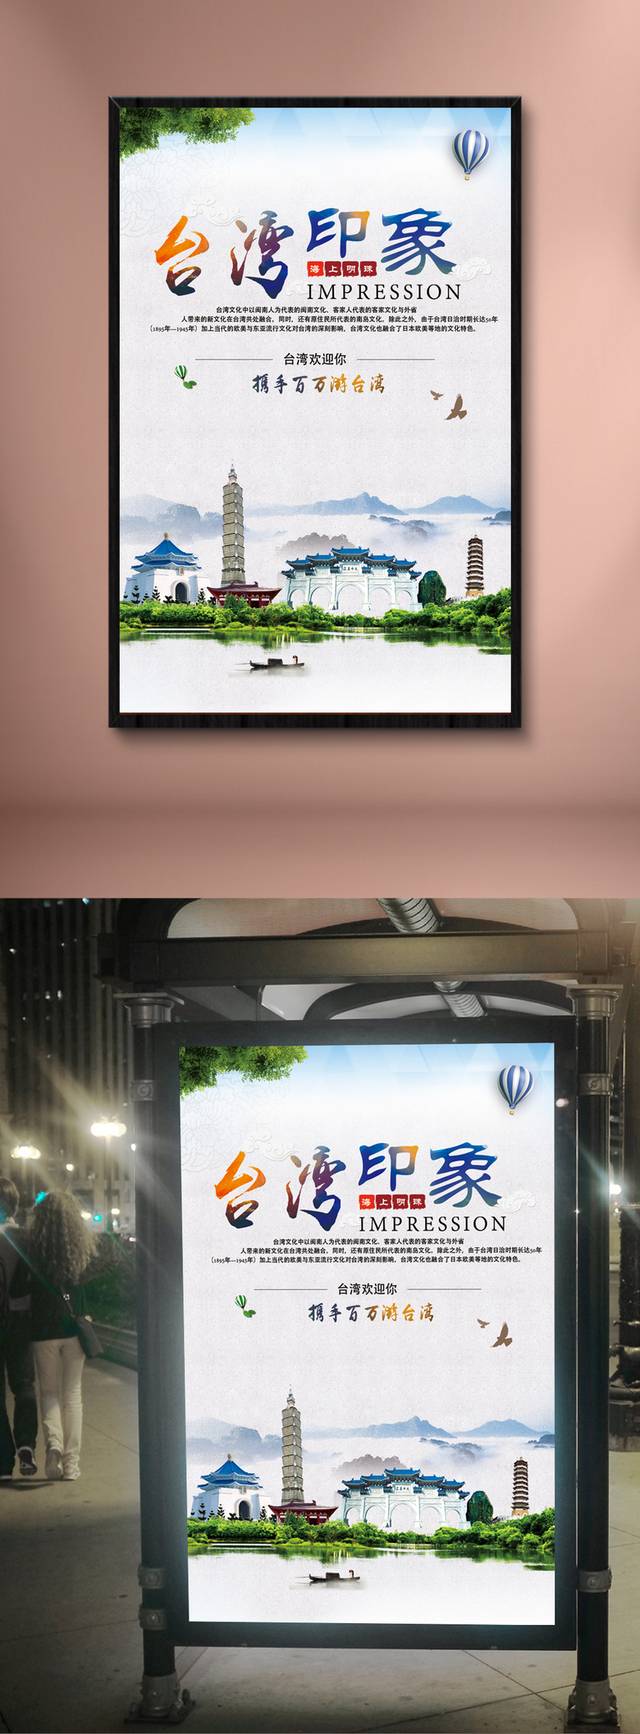 台湾印象旅游海报设计